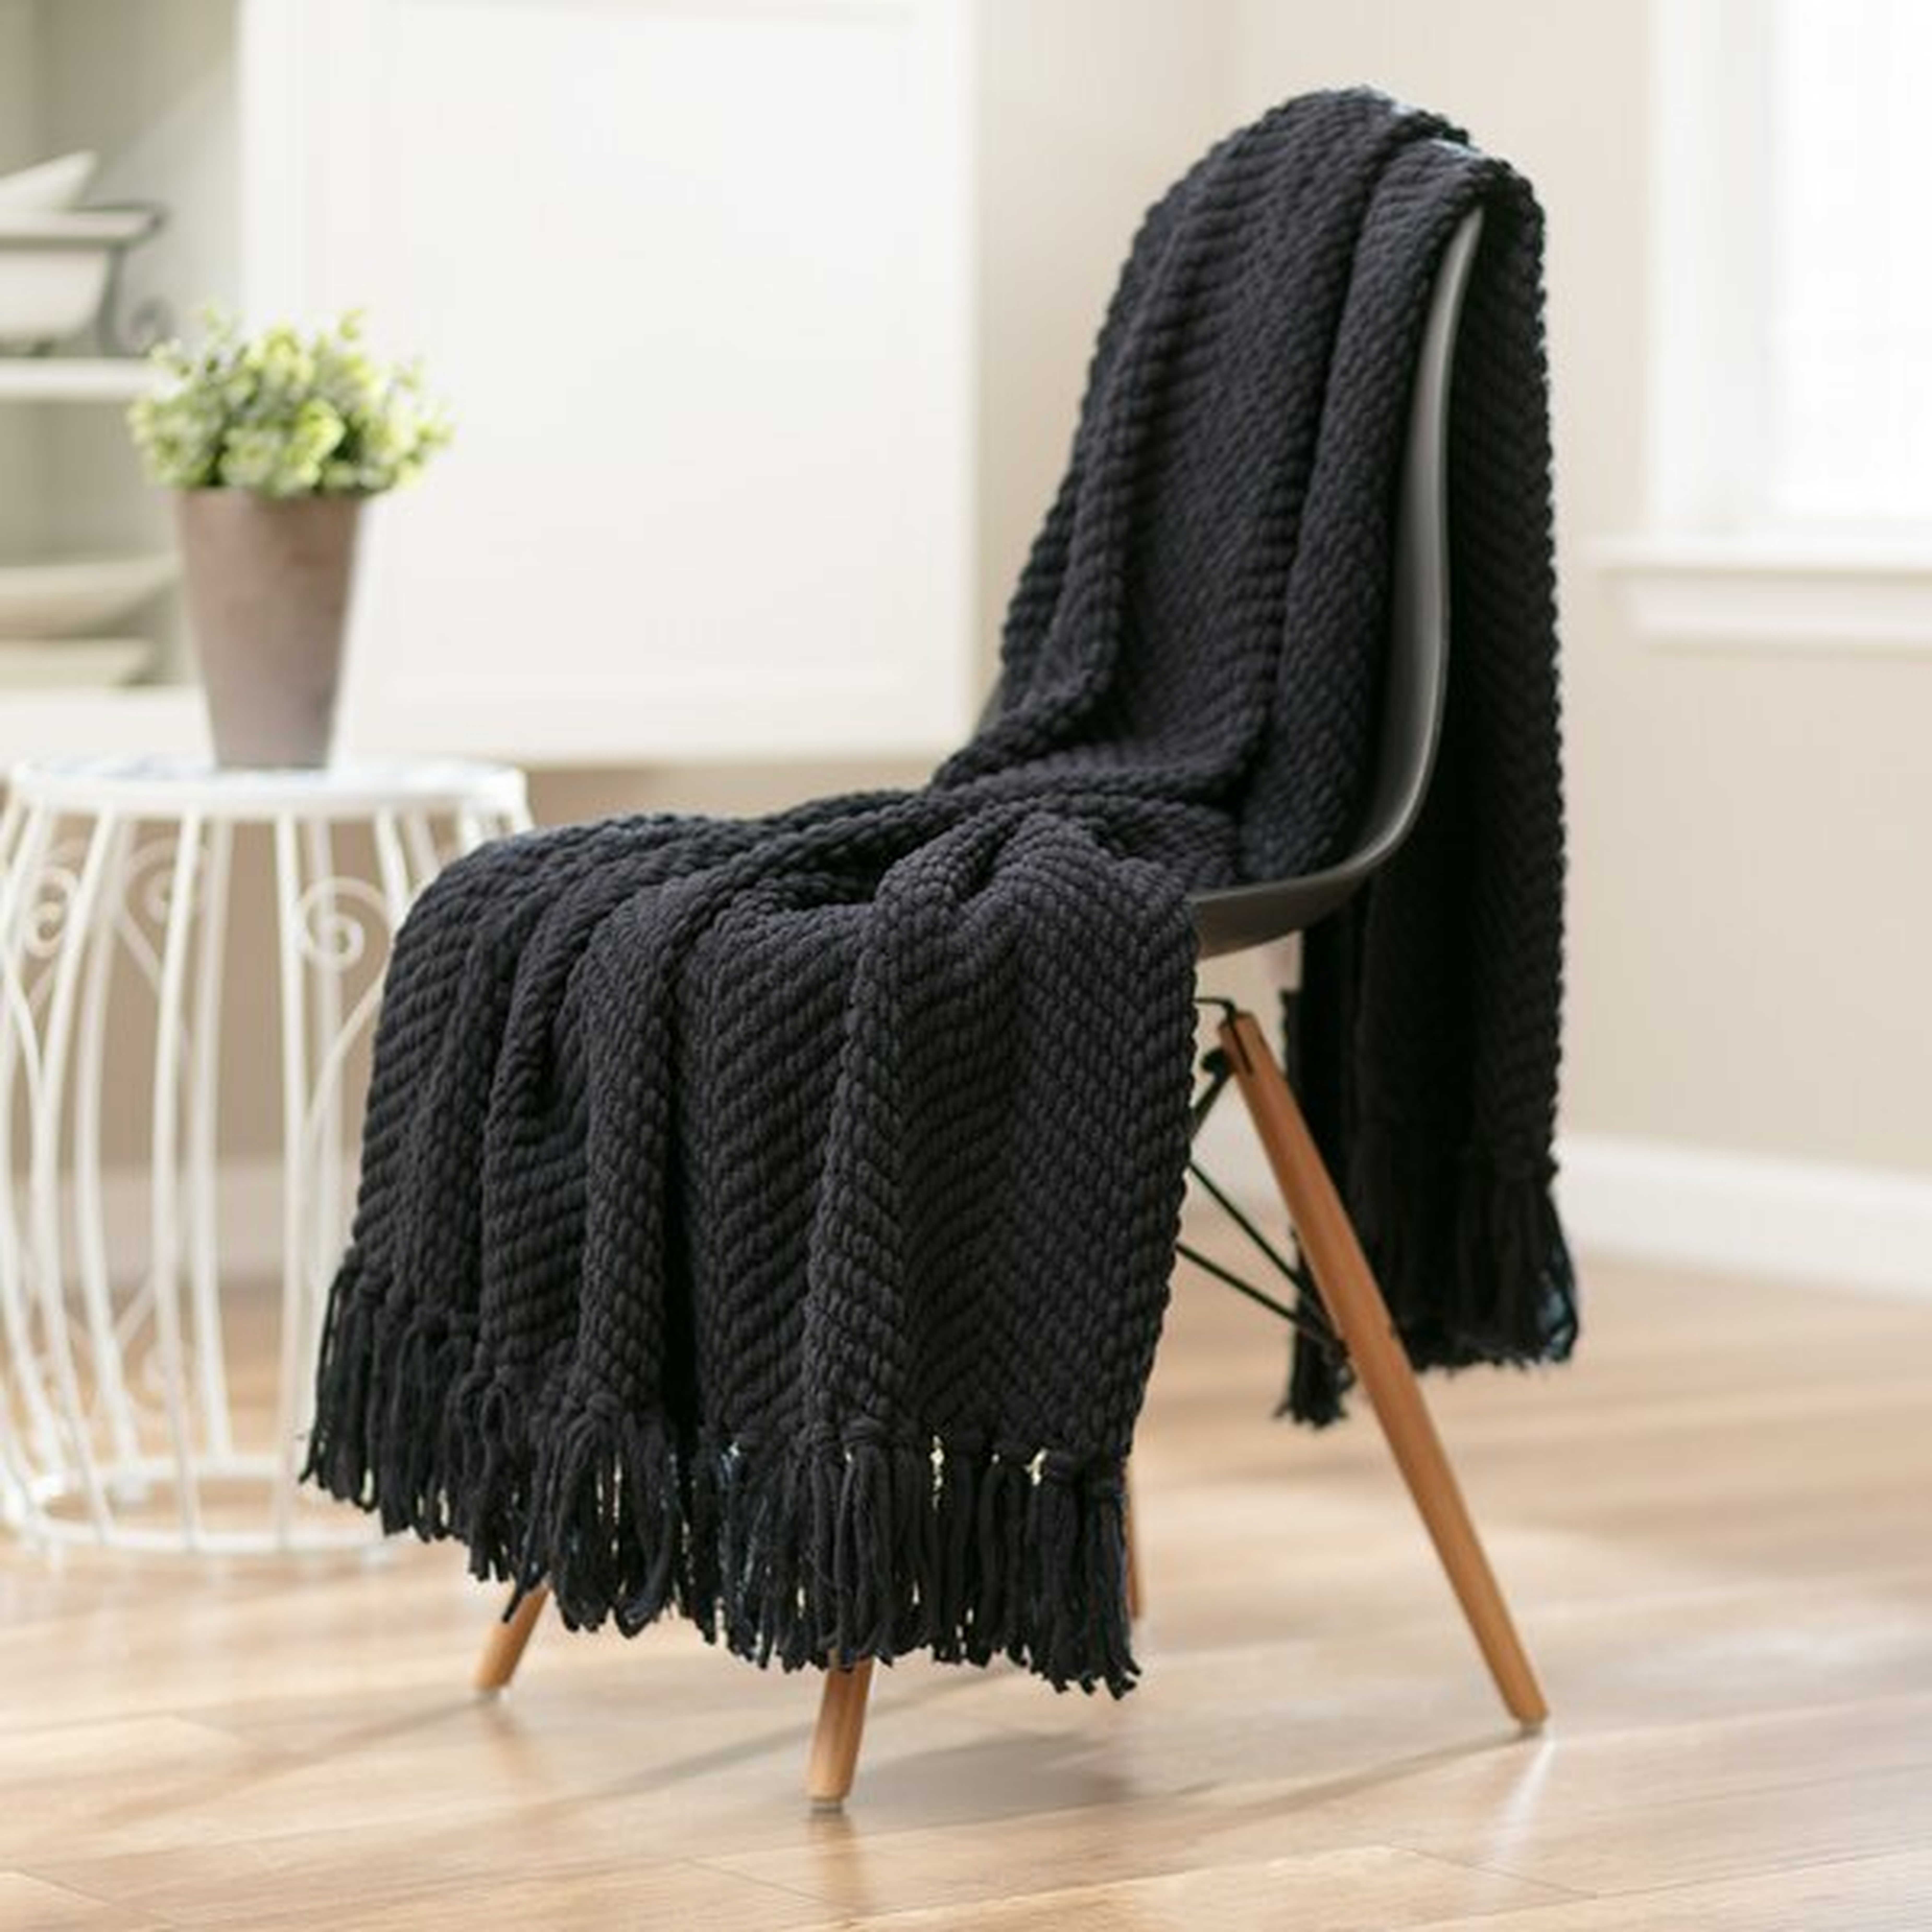 Goufes Textured Knitted Super Soft Blanket - Wayfair